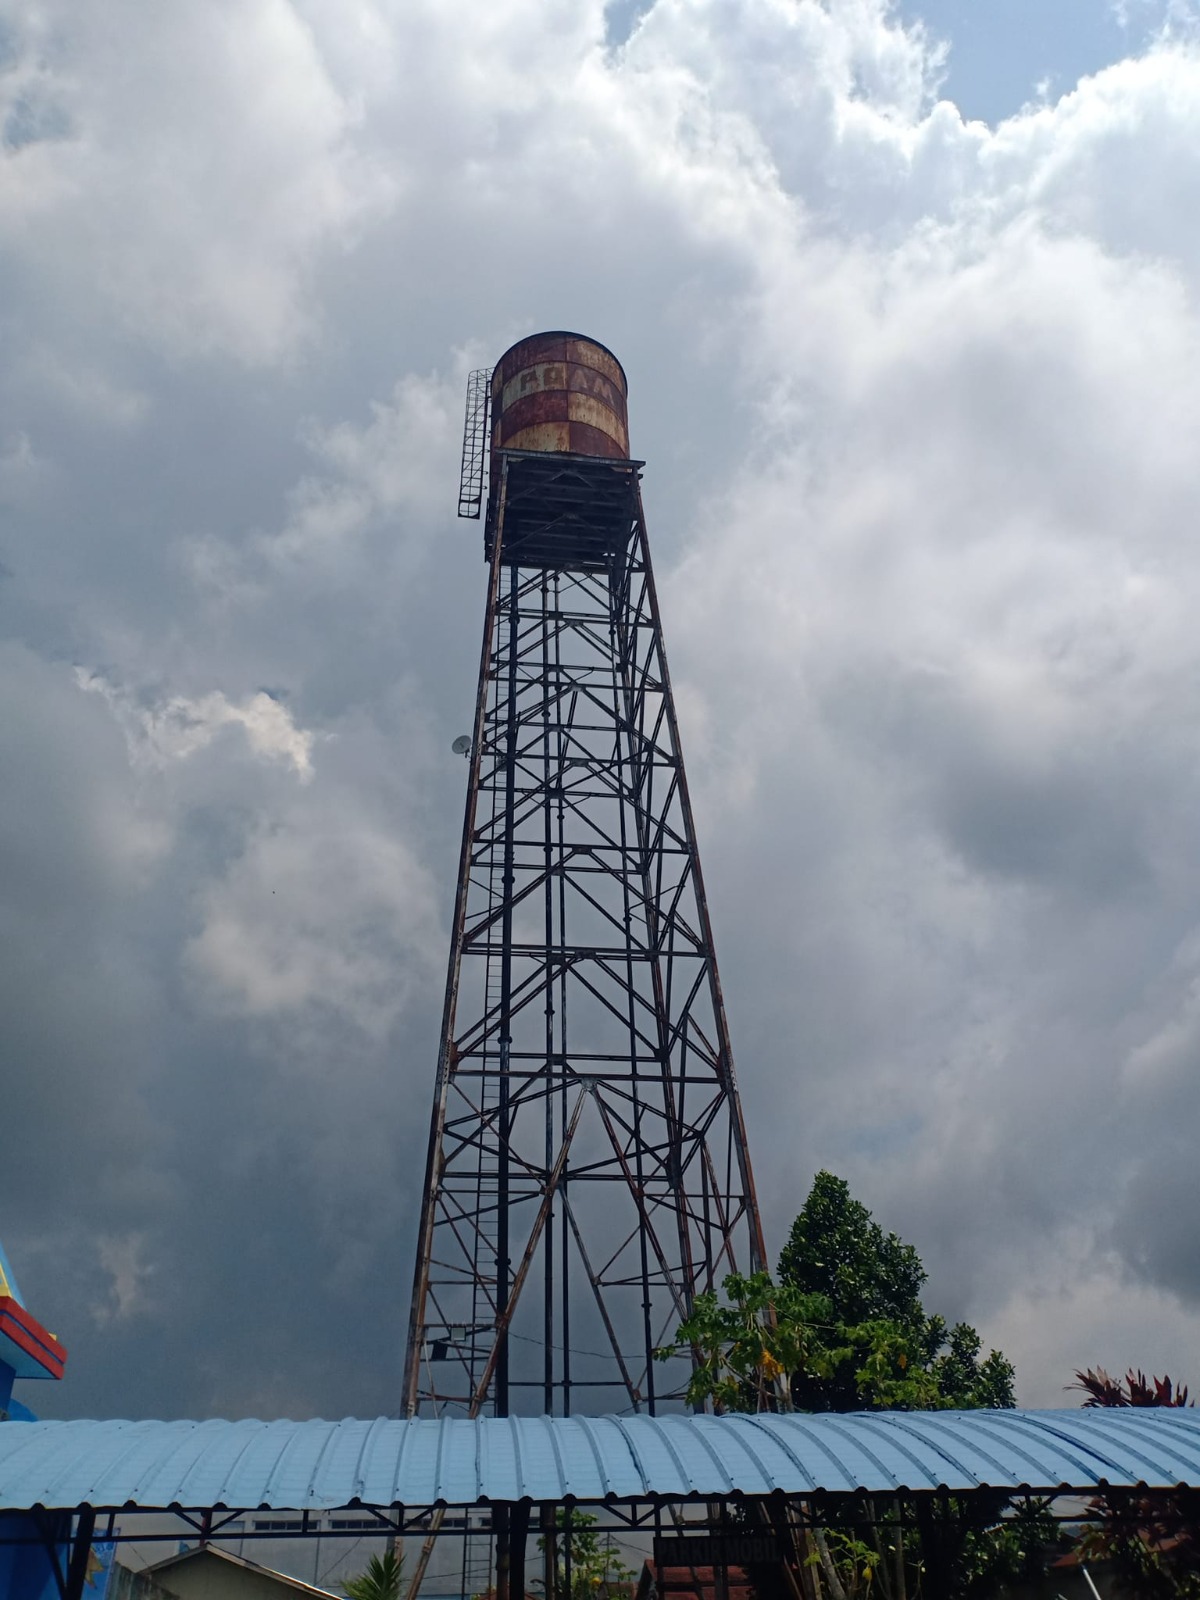 Menara PAM peninggalan olah air era Belanda, 1927--kini Cagar Budaya dan Land Mark Kota Singkawang